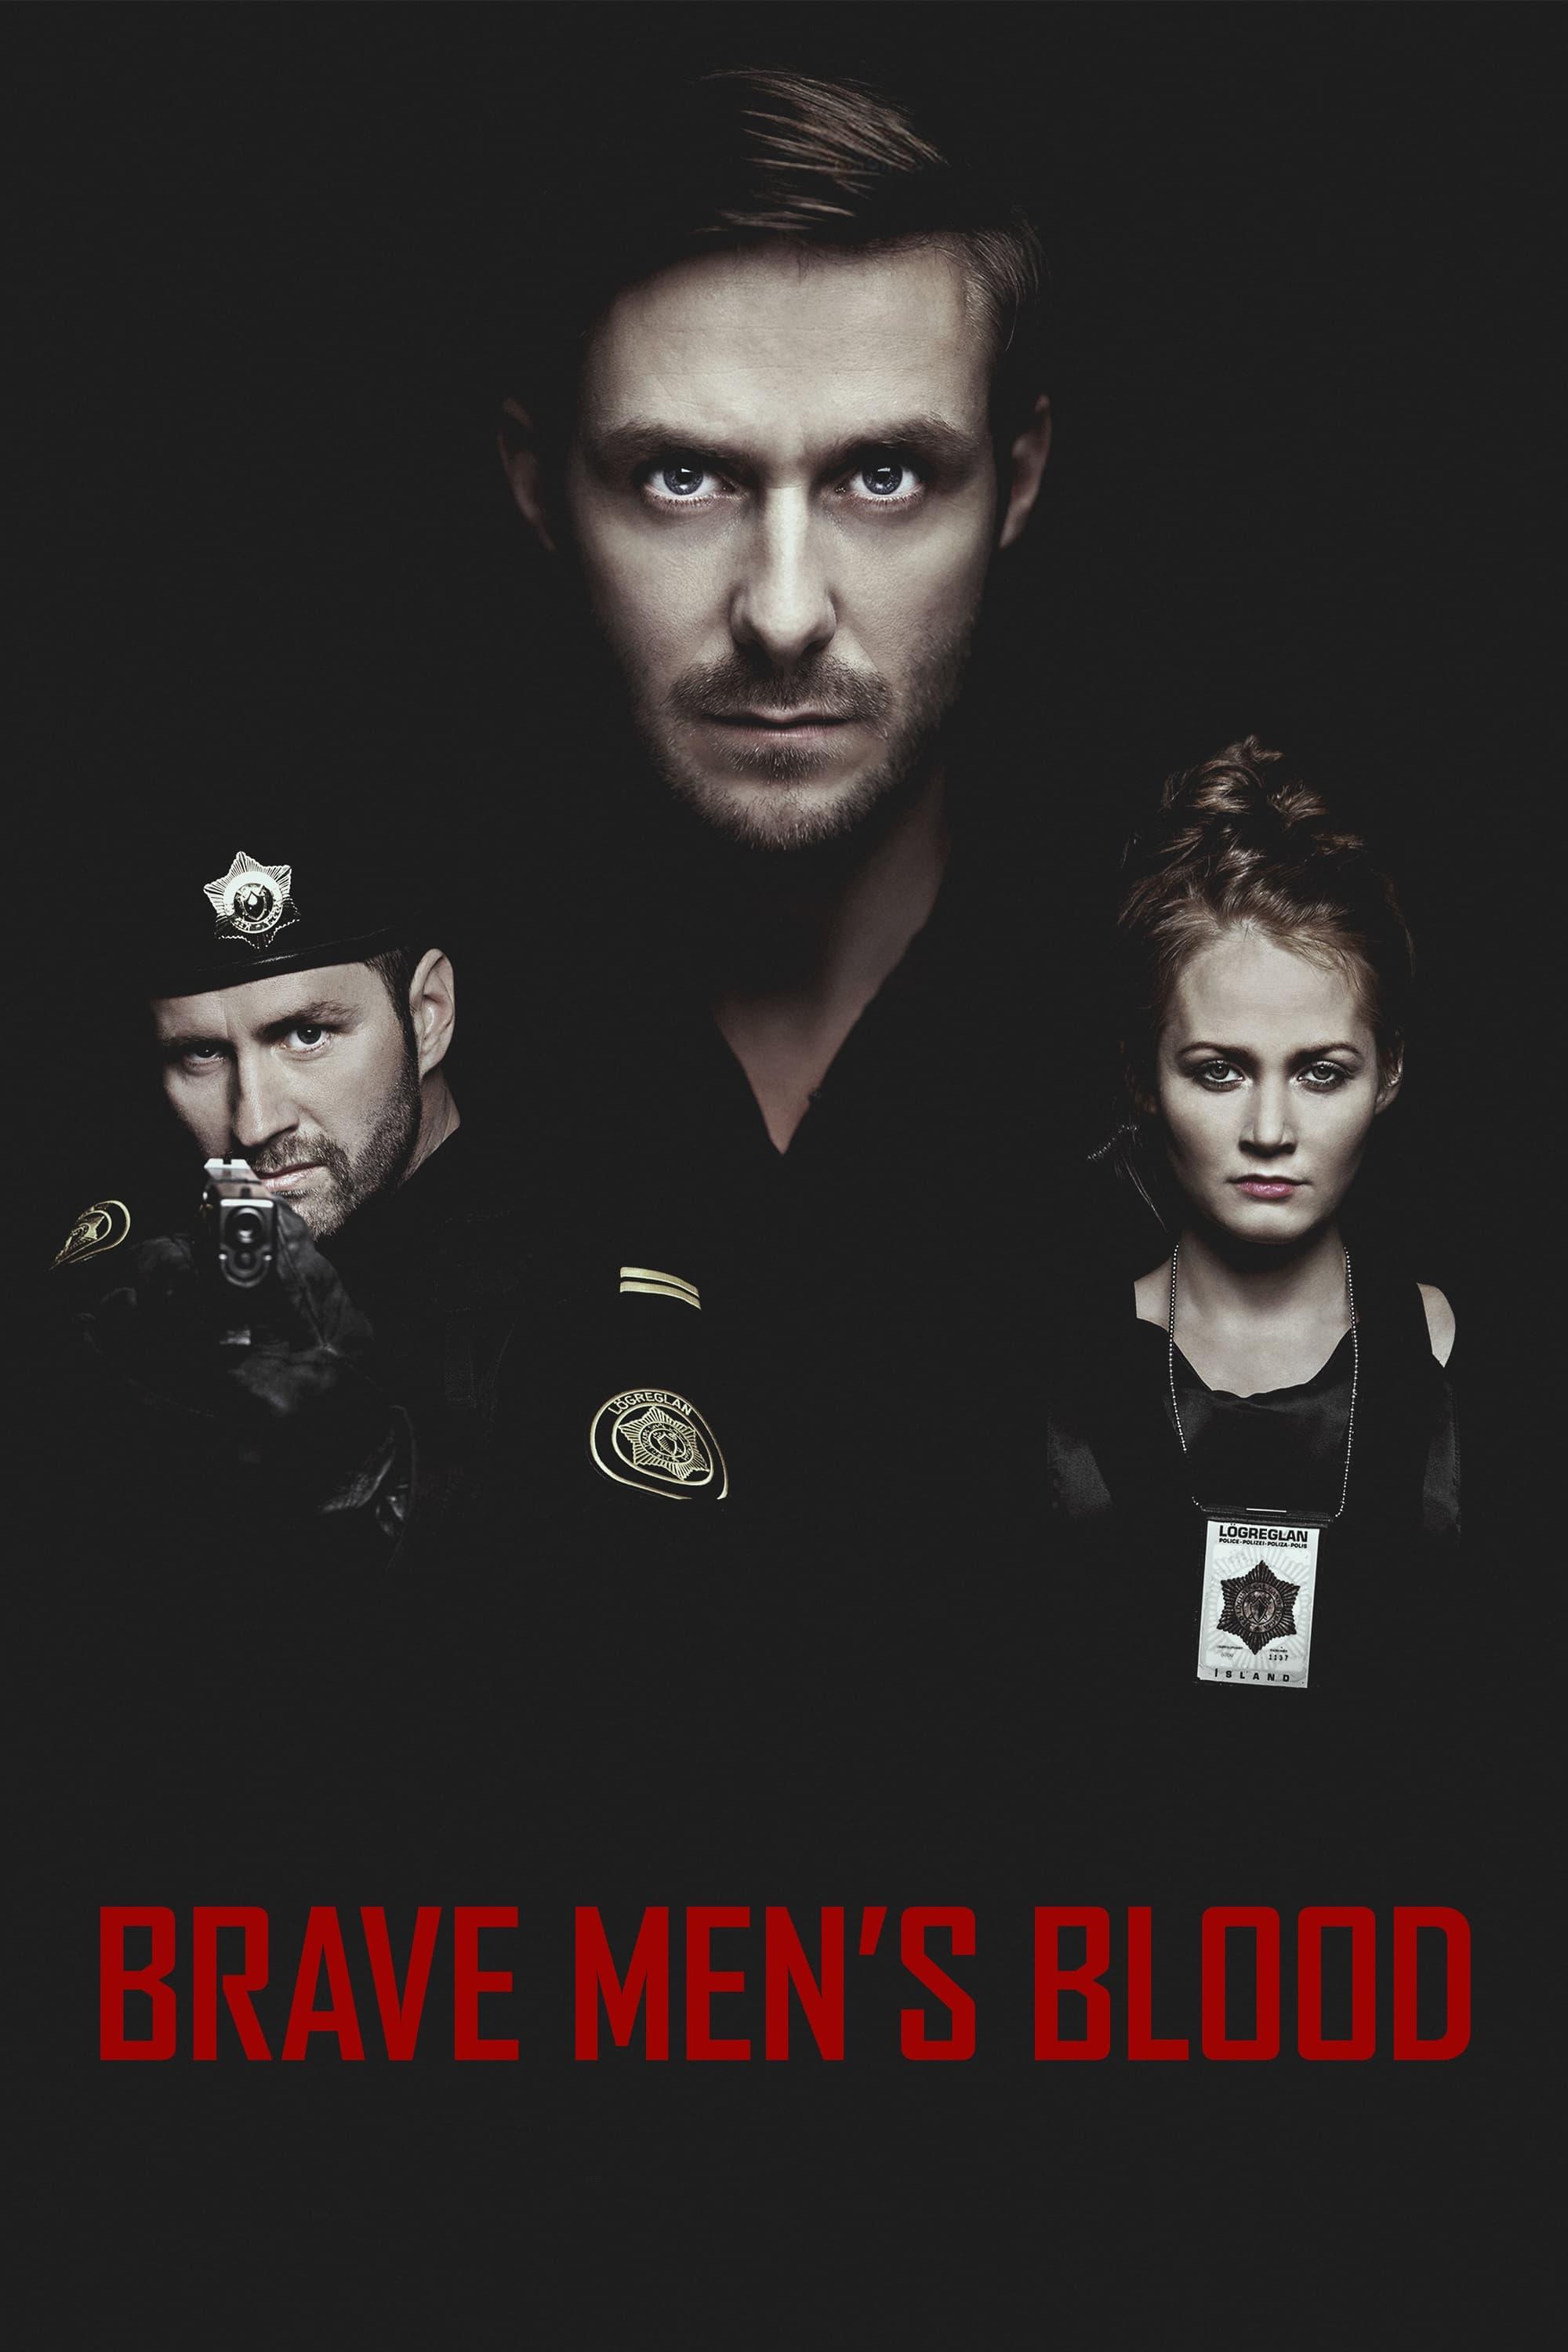 Brave Men's Blood poster